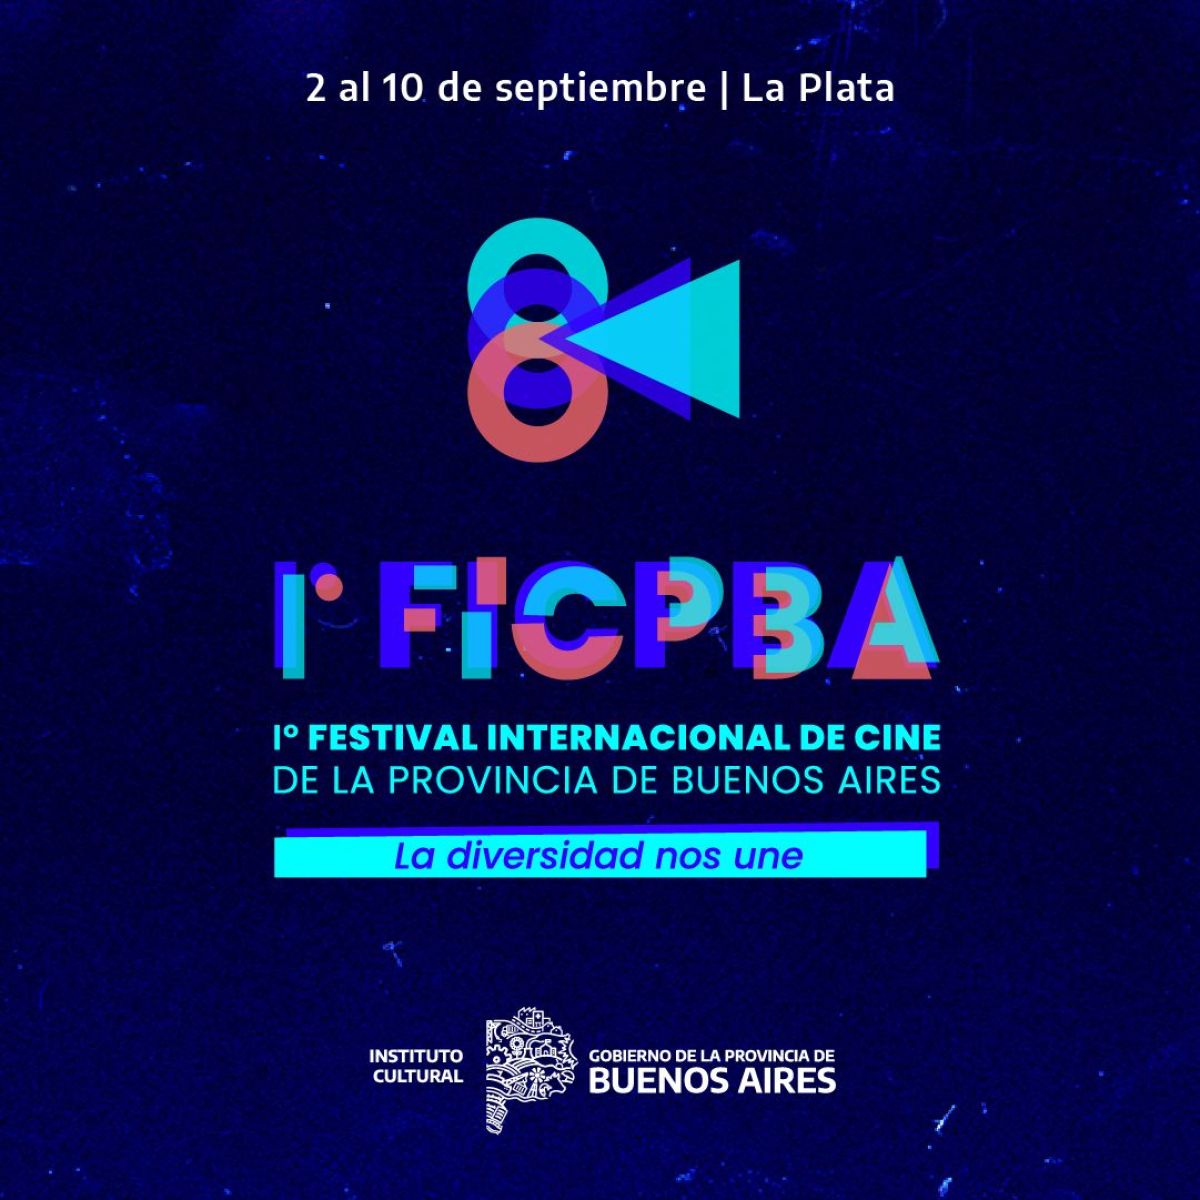 Toda la programación del Festival Internacional de Cine de la Provincia de Buenos Aires - FICPBA